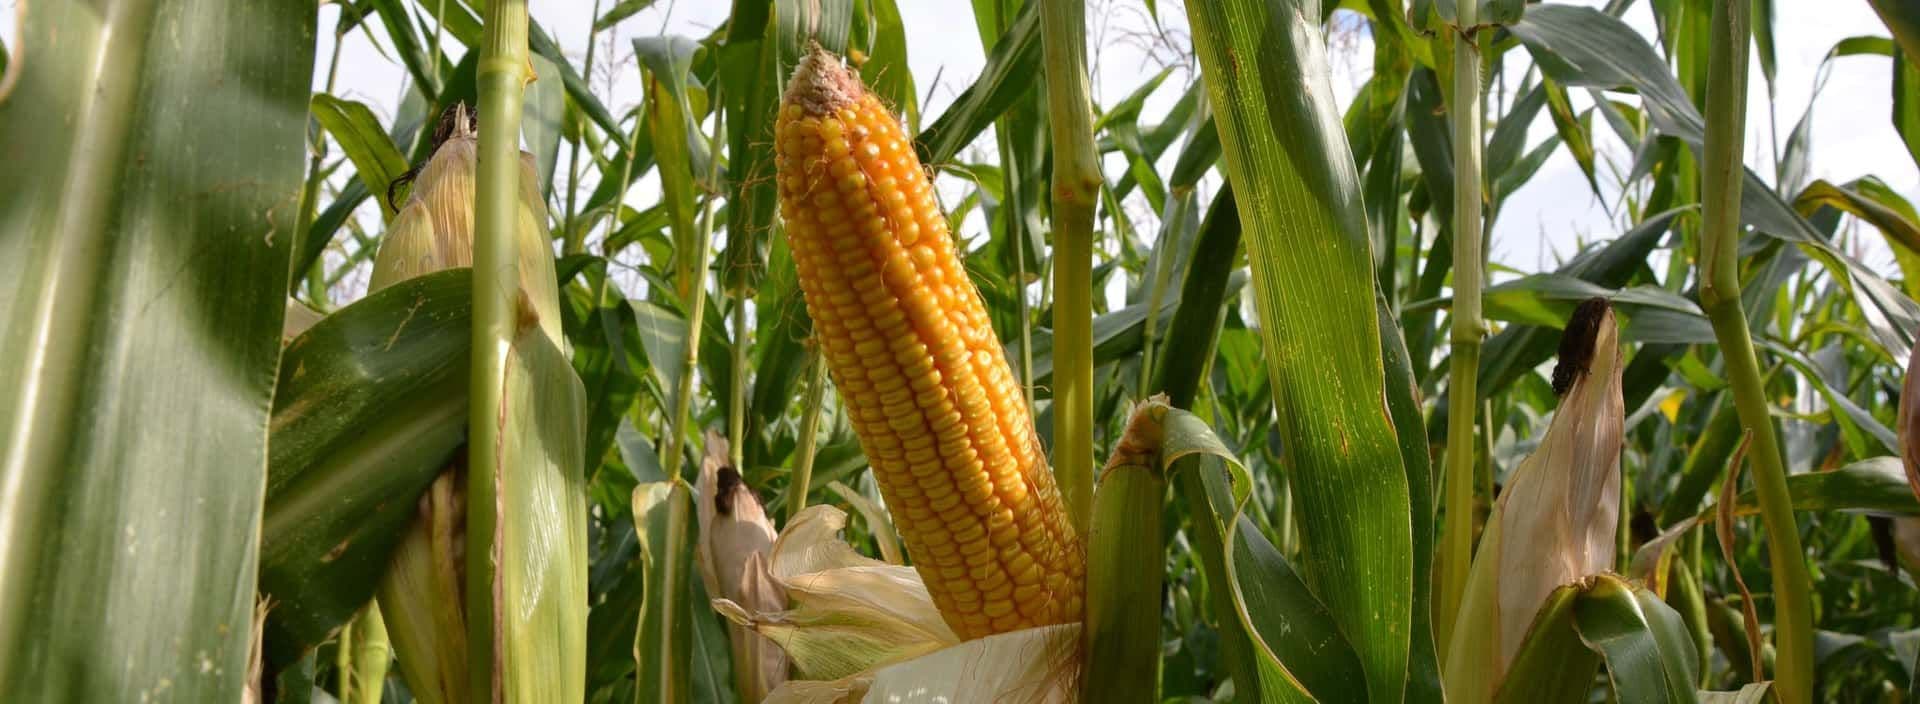 Corn cob 